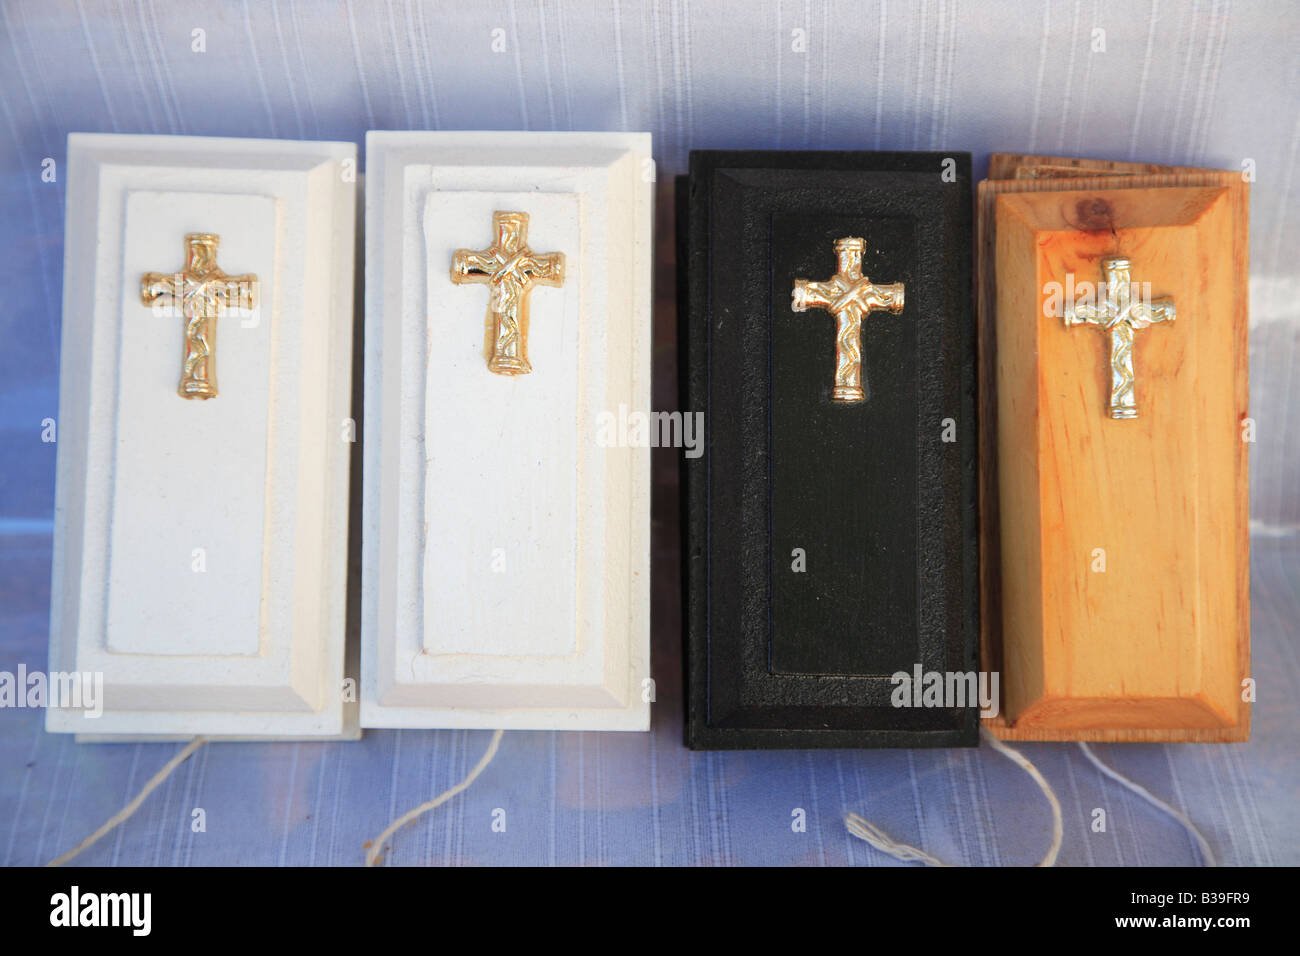 Miniatura bare sulla vendita per il Giorno dei Morti Festival in Guanajuato Messico Foto Stock